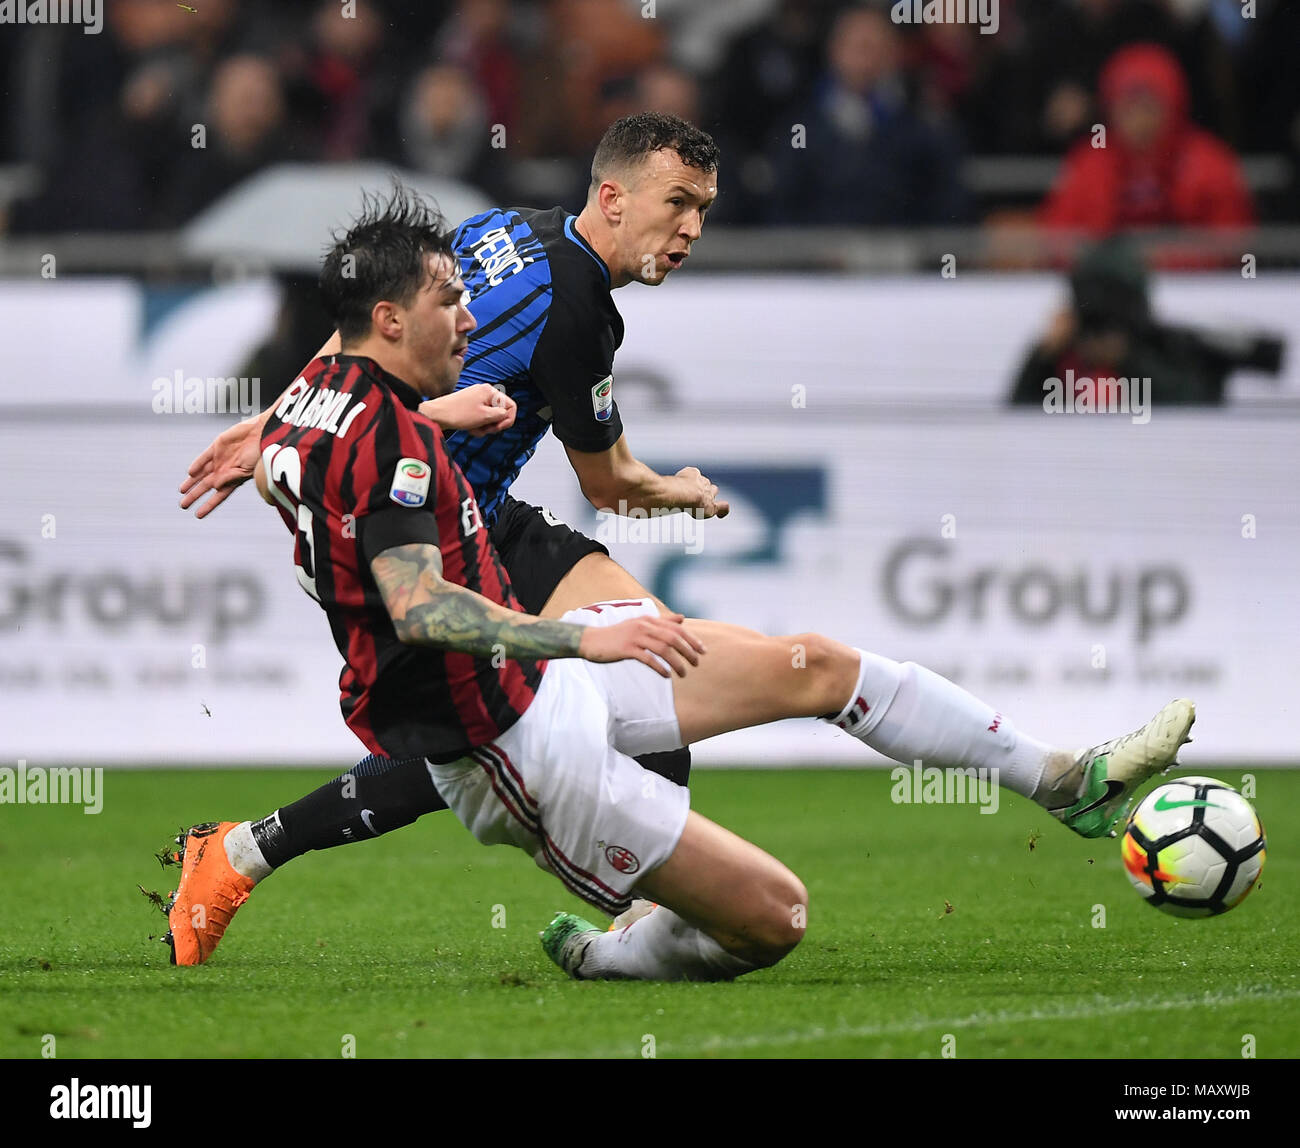 180405)-- Milano, 5 aprile 2018 (Xinhua)-- AC Milan di Alessio Romagnoli  (anteriore) con vies Inter Ivan Perisic durante la serie di una partita di  calcio tra AC Milan e Inter Milan a